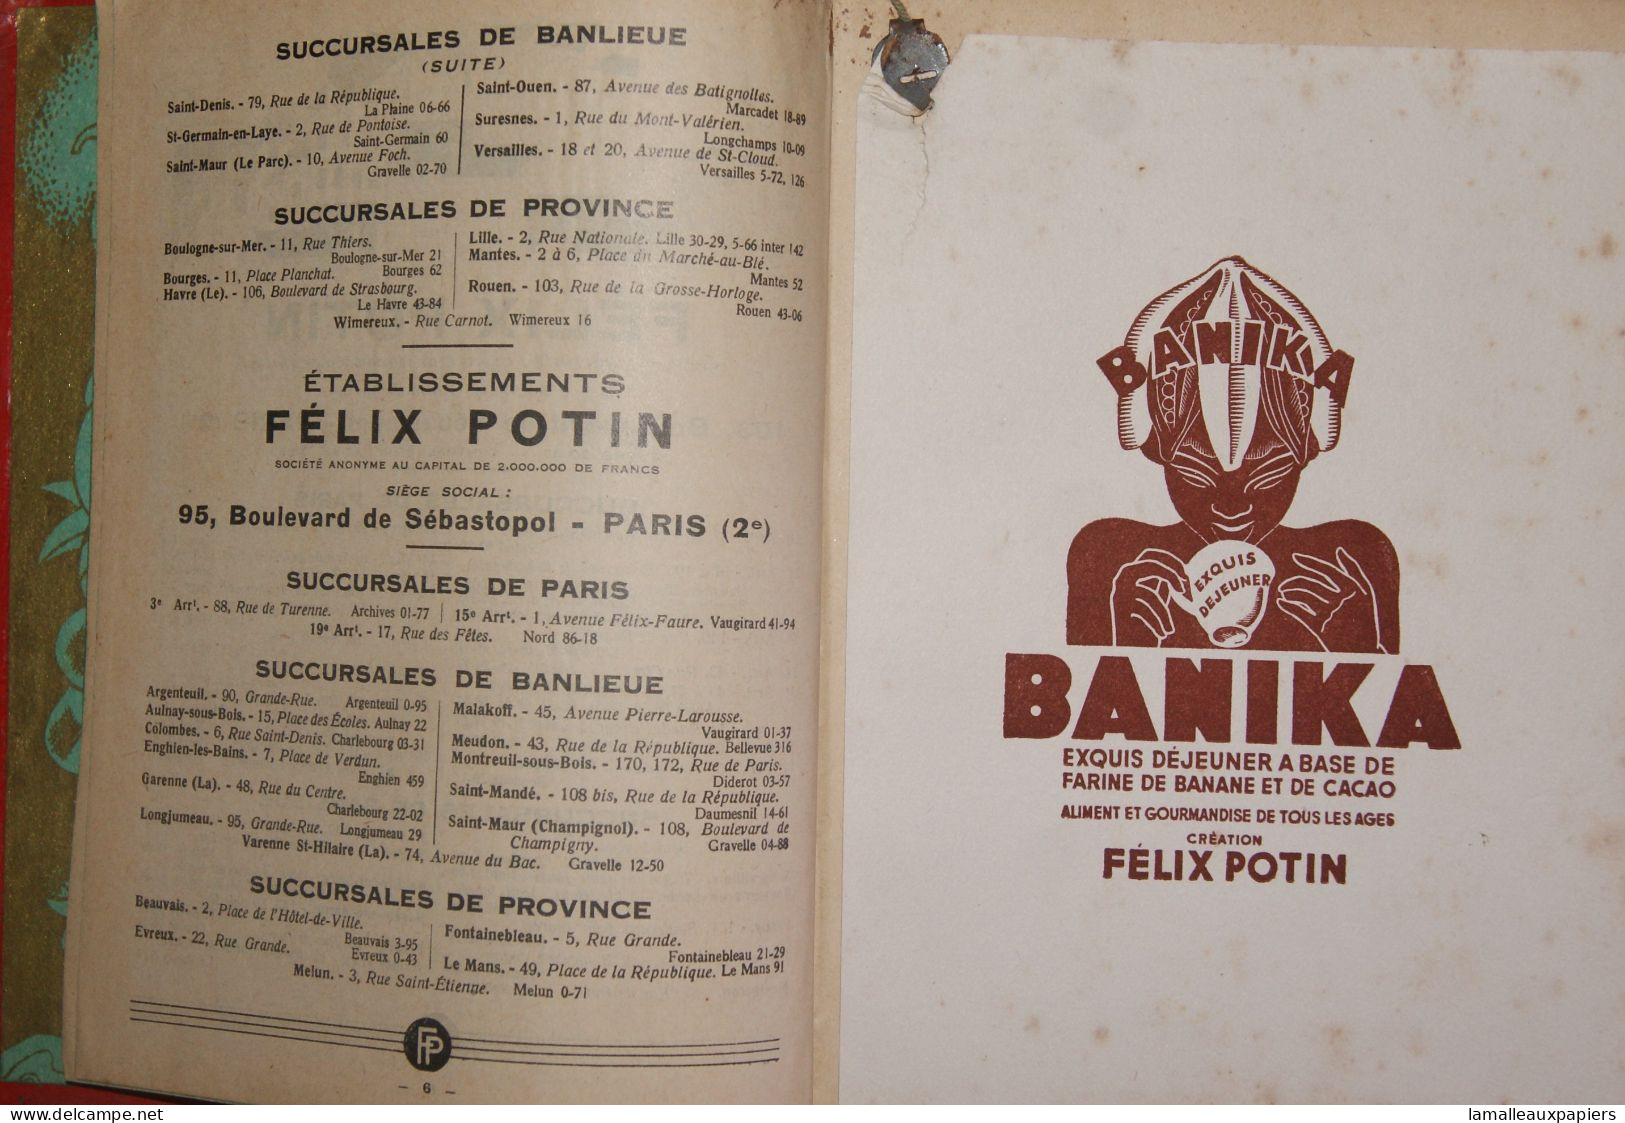 FELIX POTIN 1932 - Agendas Vierges